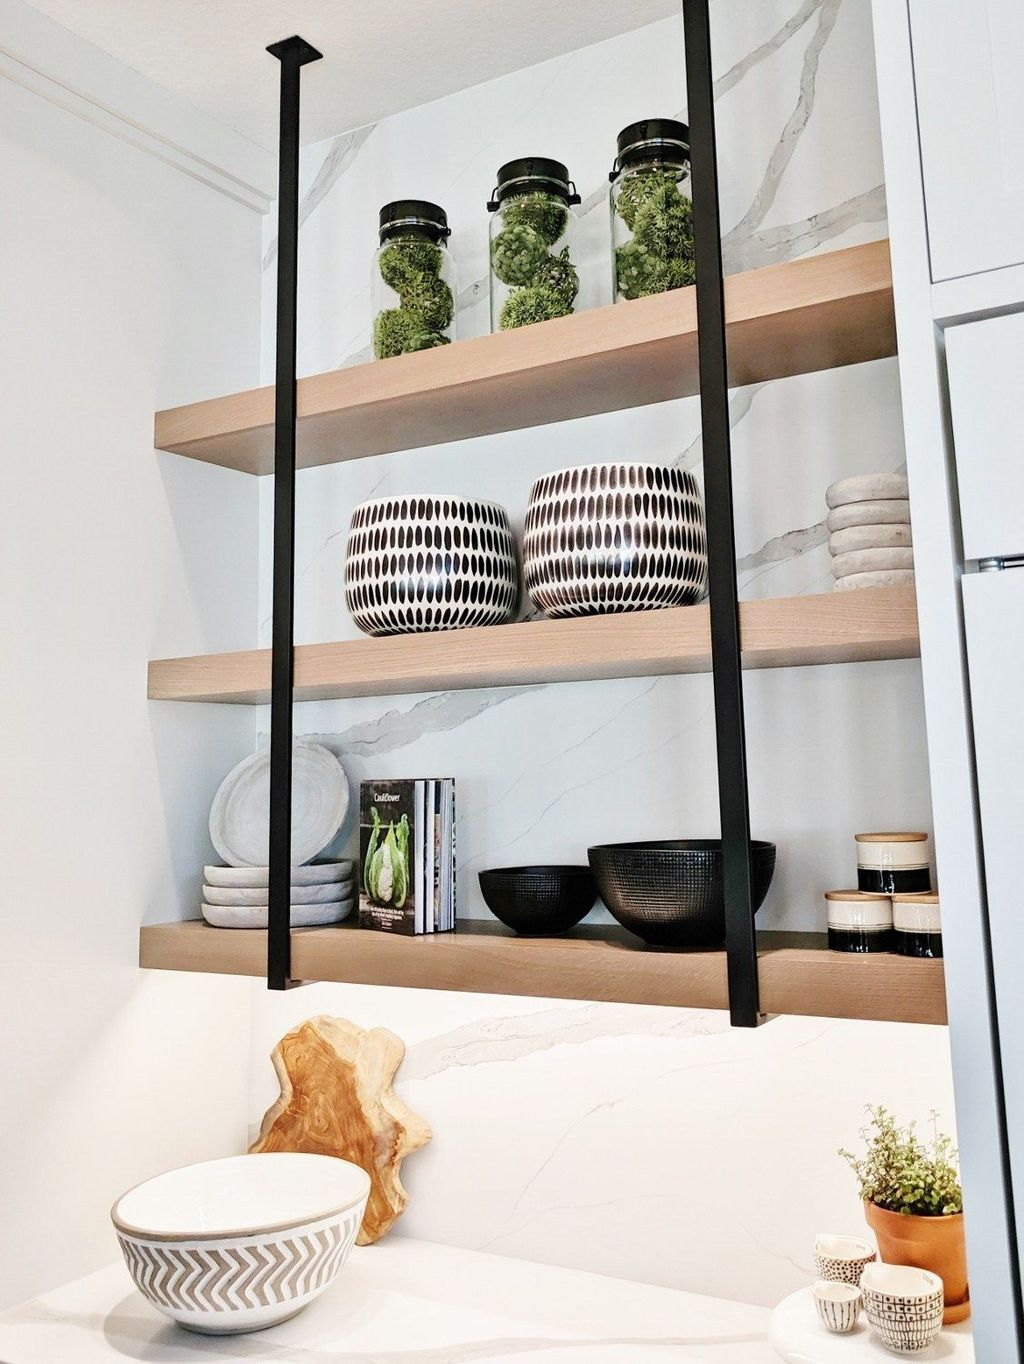 Wonderful Industrial Kitchen Shelf Design Ideas To Organize Your Kitchen25